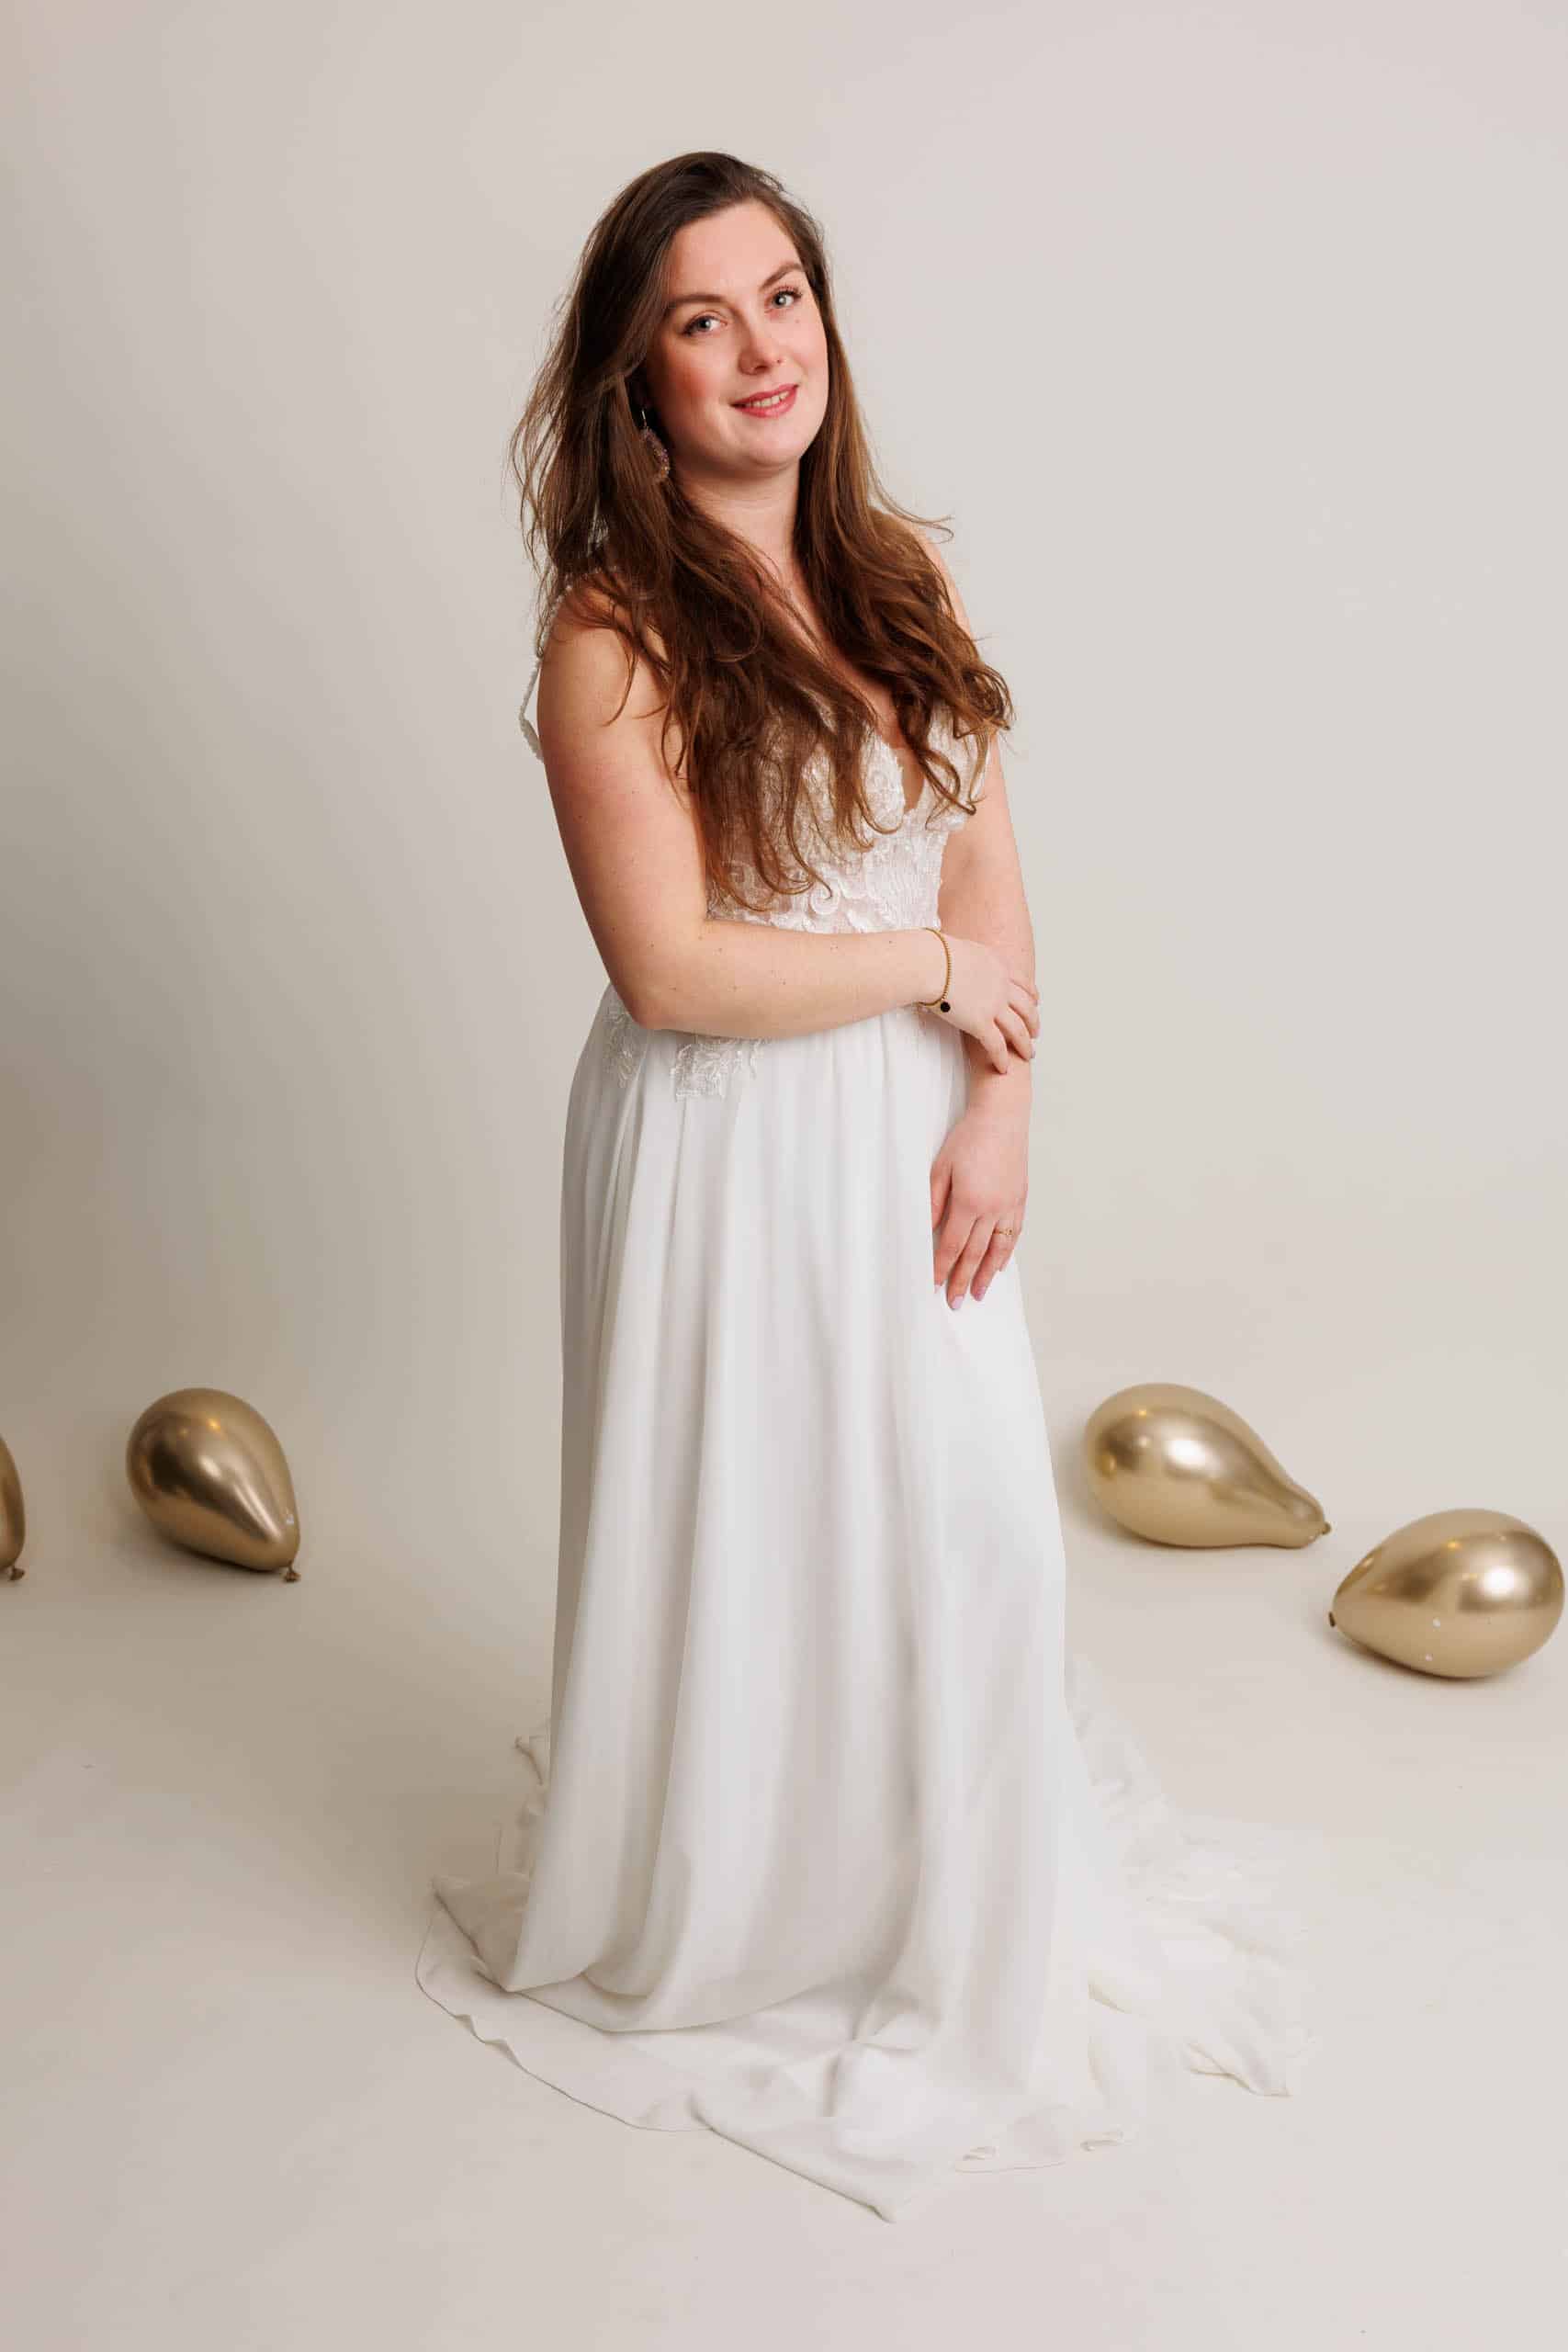 Een vrouw in een witte trouwjurk poseert voor een foto.